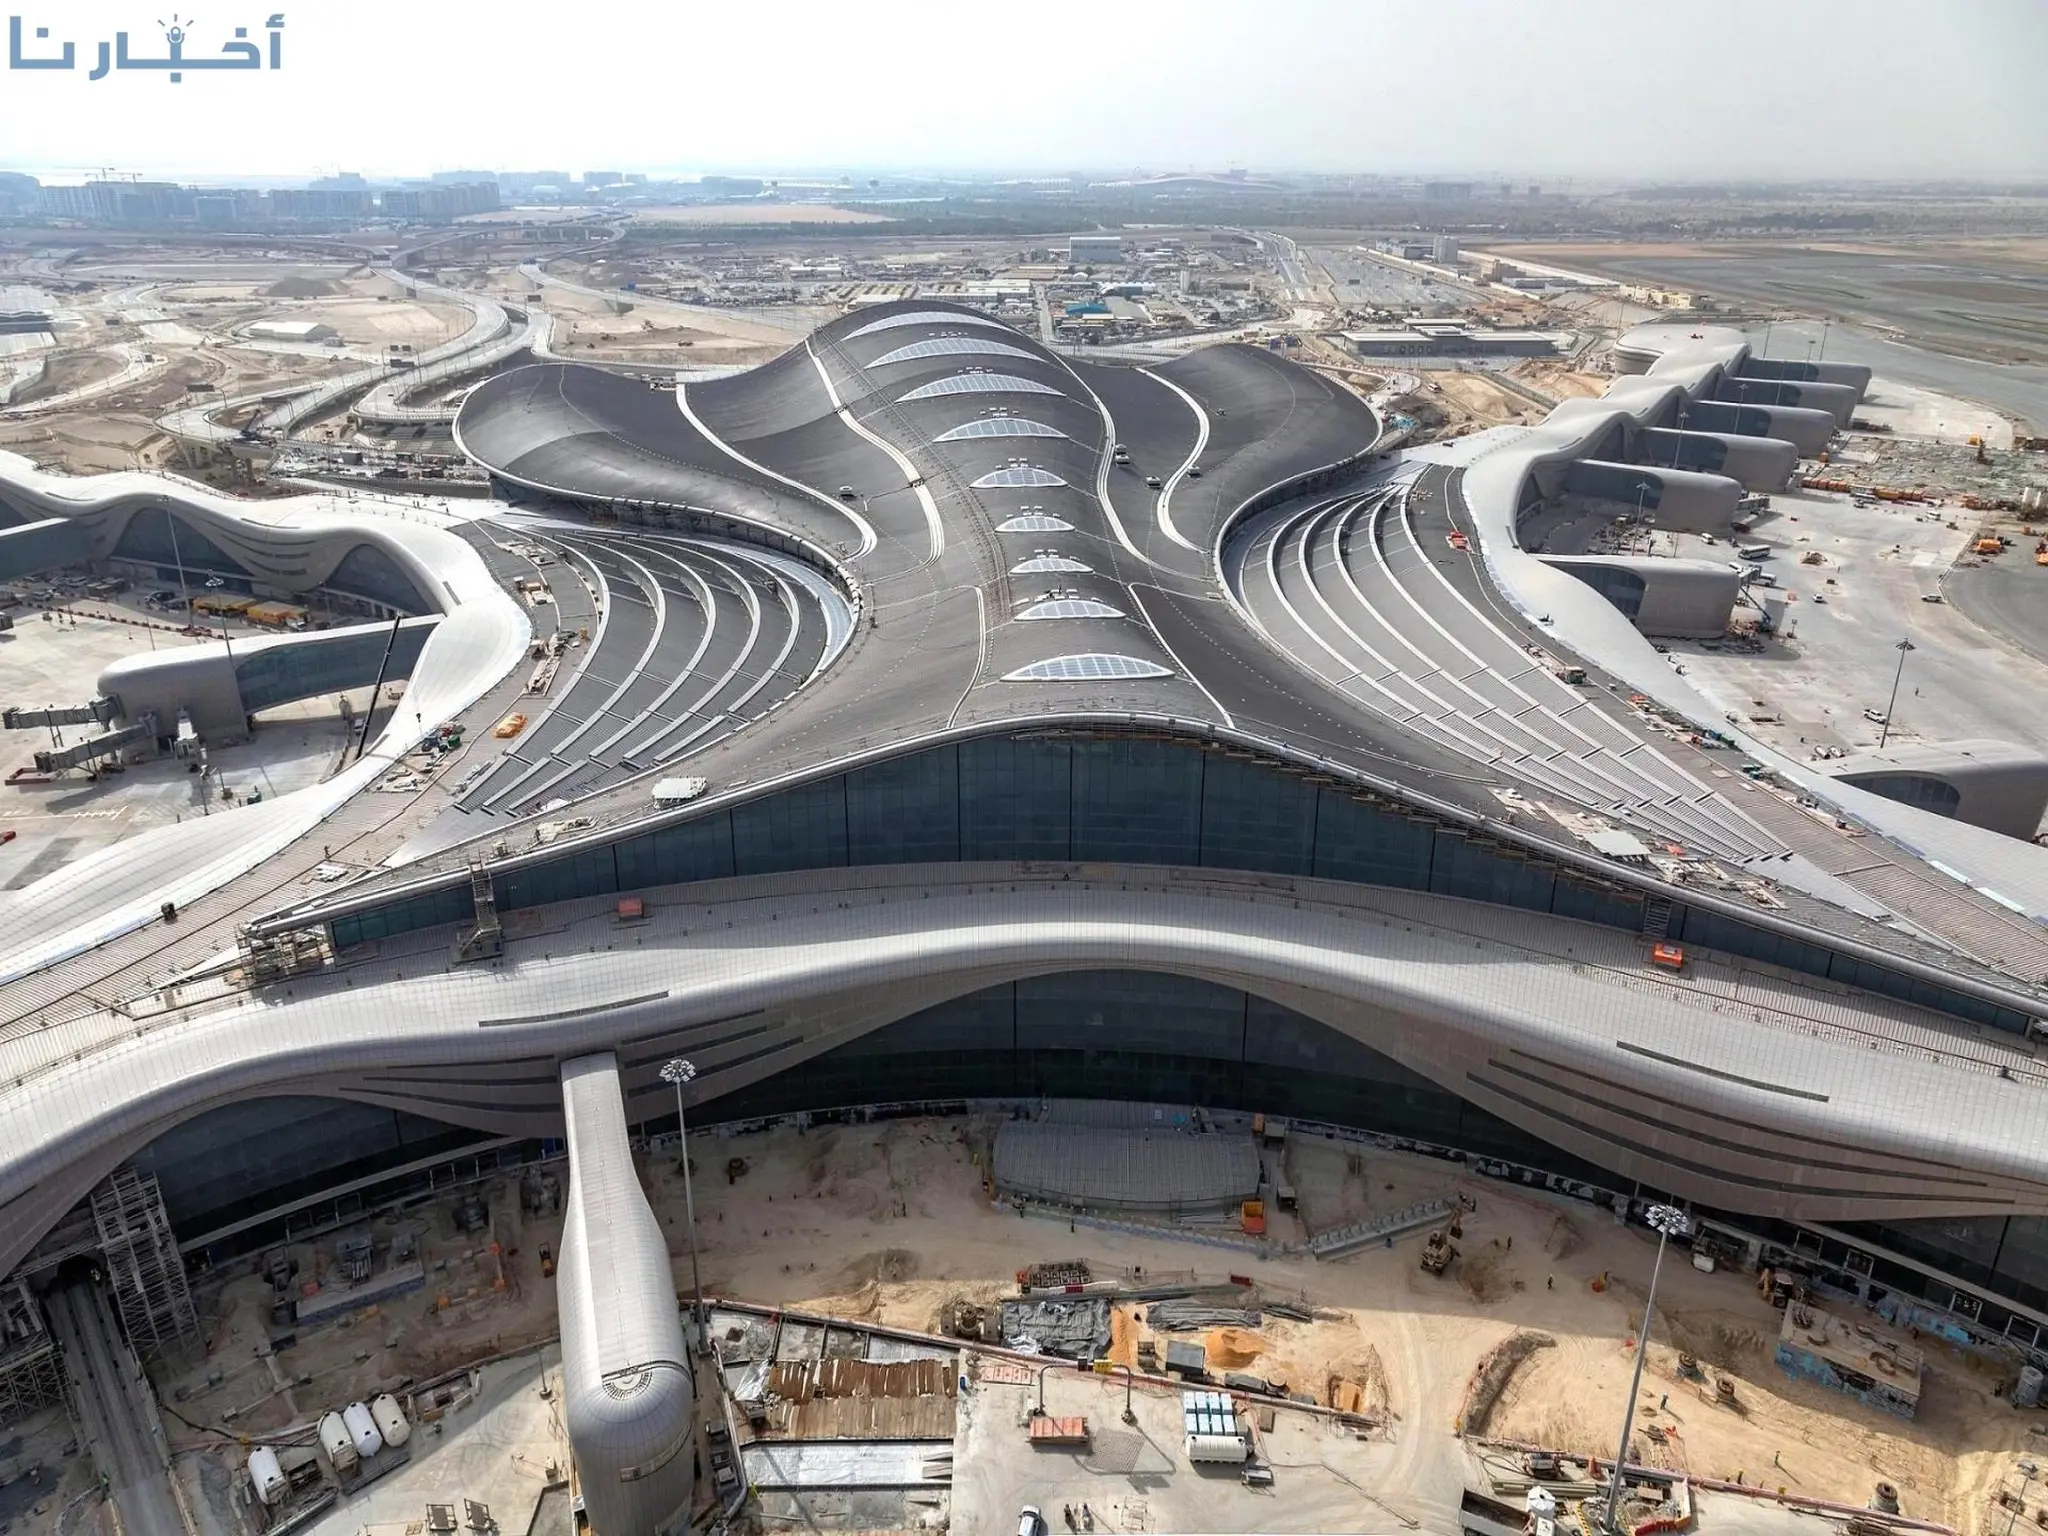  مطارات أبوظبي تكشف عن خططها التوسعية للمنطقة الحرة